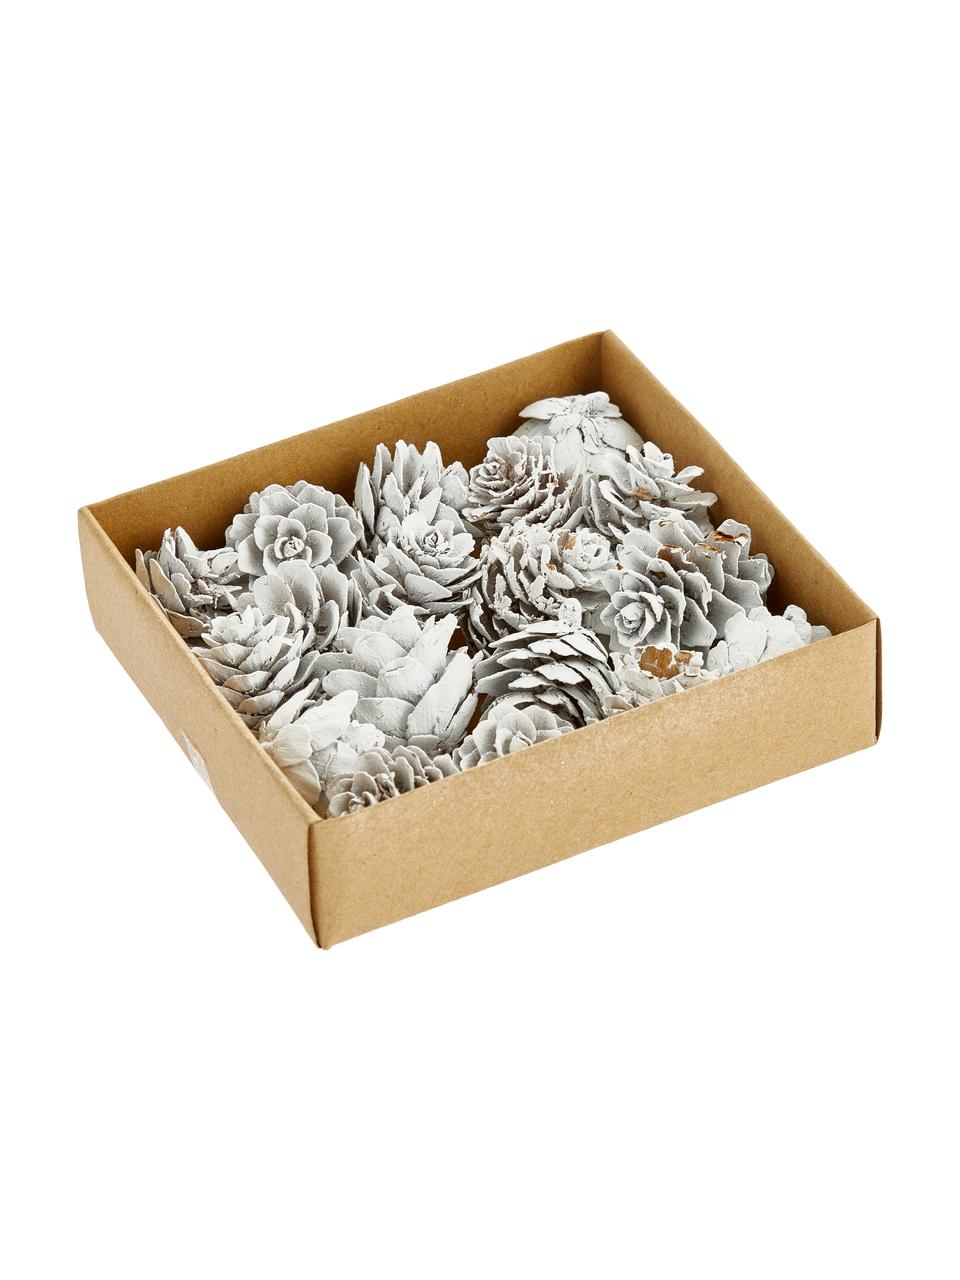 Deko-Zapfen-Set Pinecones, 18 Stück, Kieferzapfen, beschichtet, Weiss, Ø 6 x H 6 cm